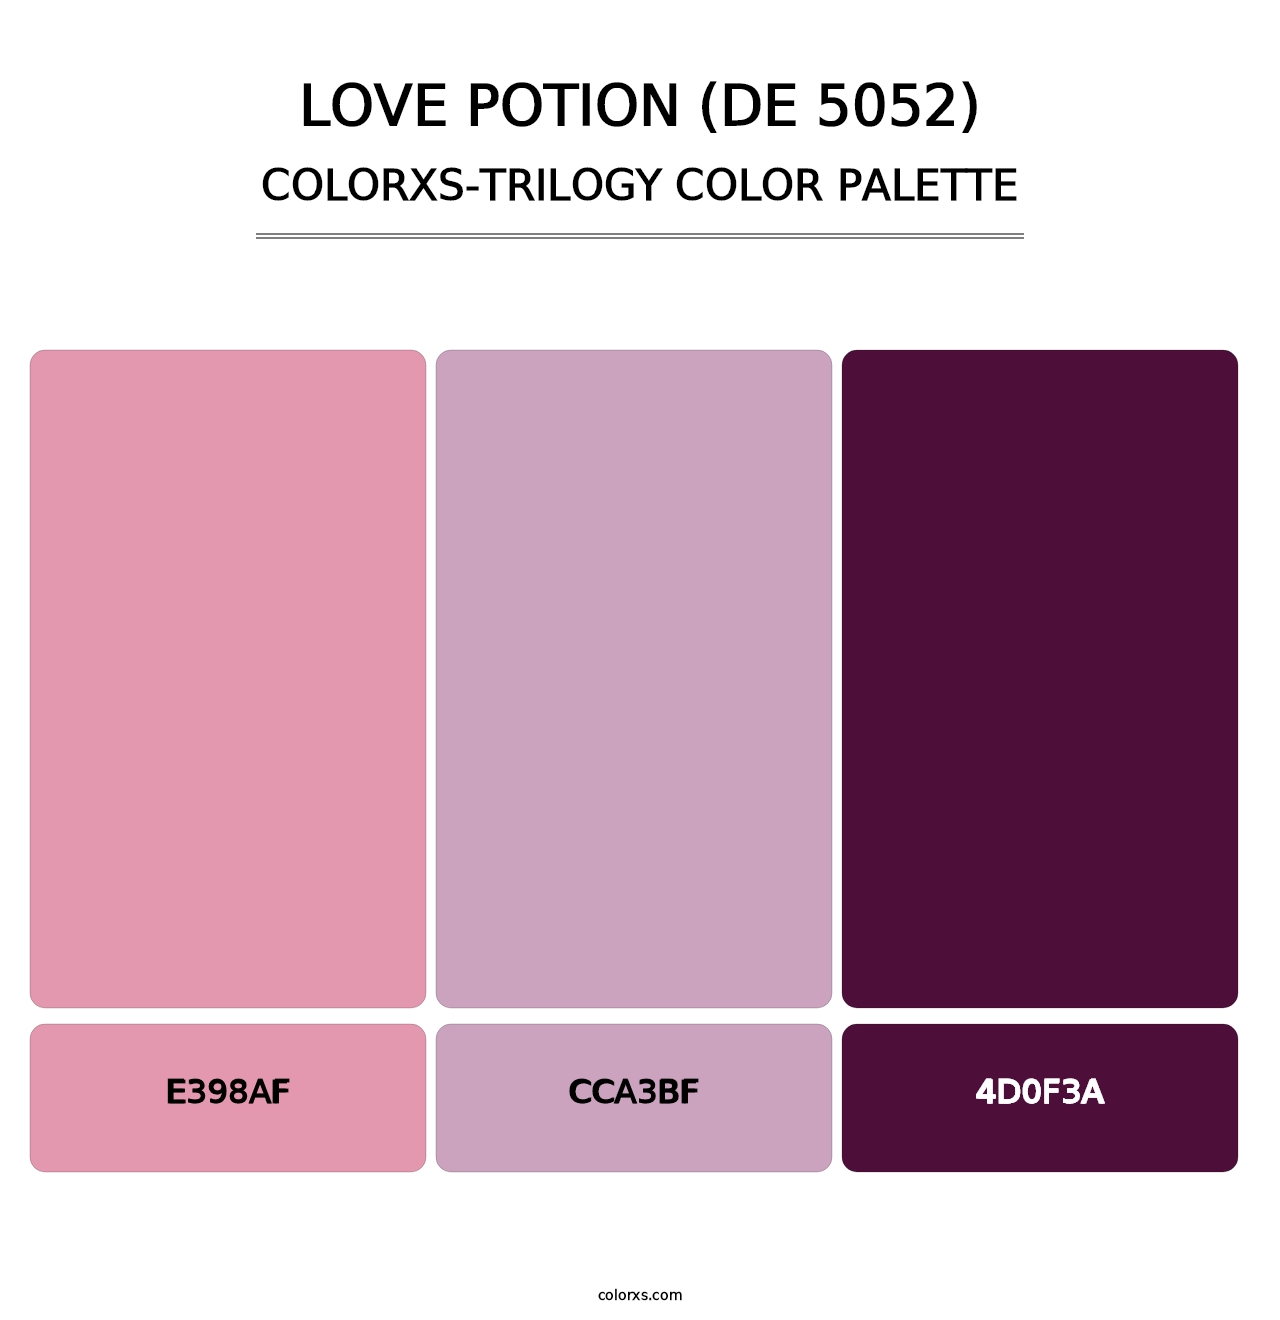 Love Potion (DE 5052) - Colorxs Trilogy Palette